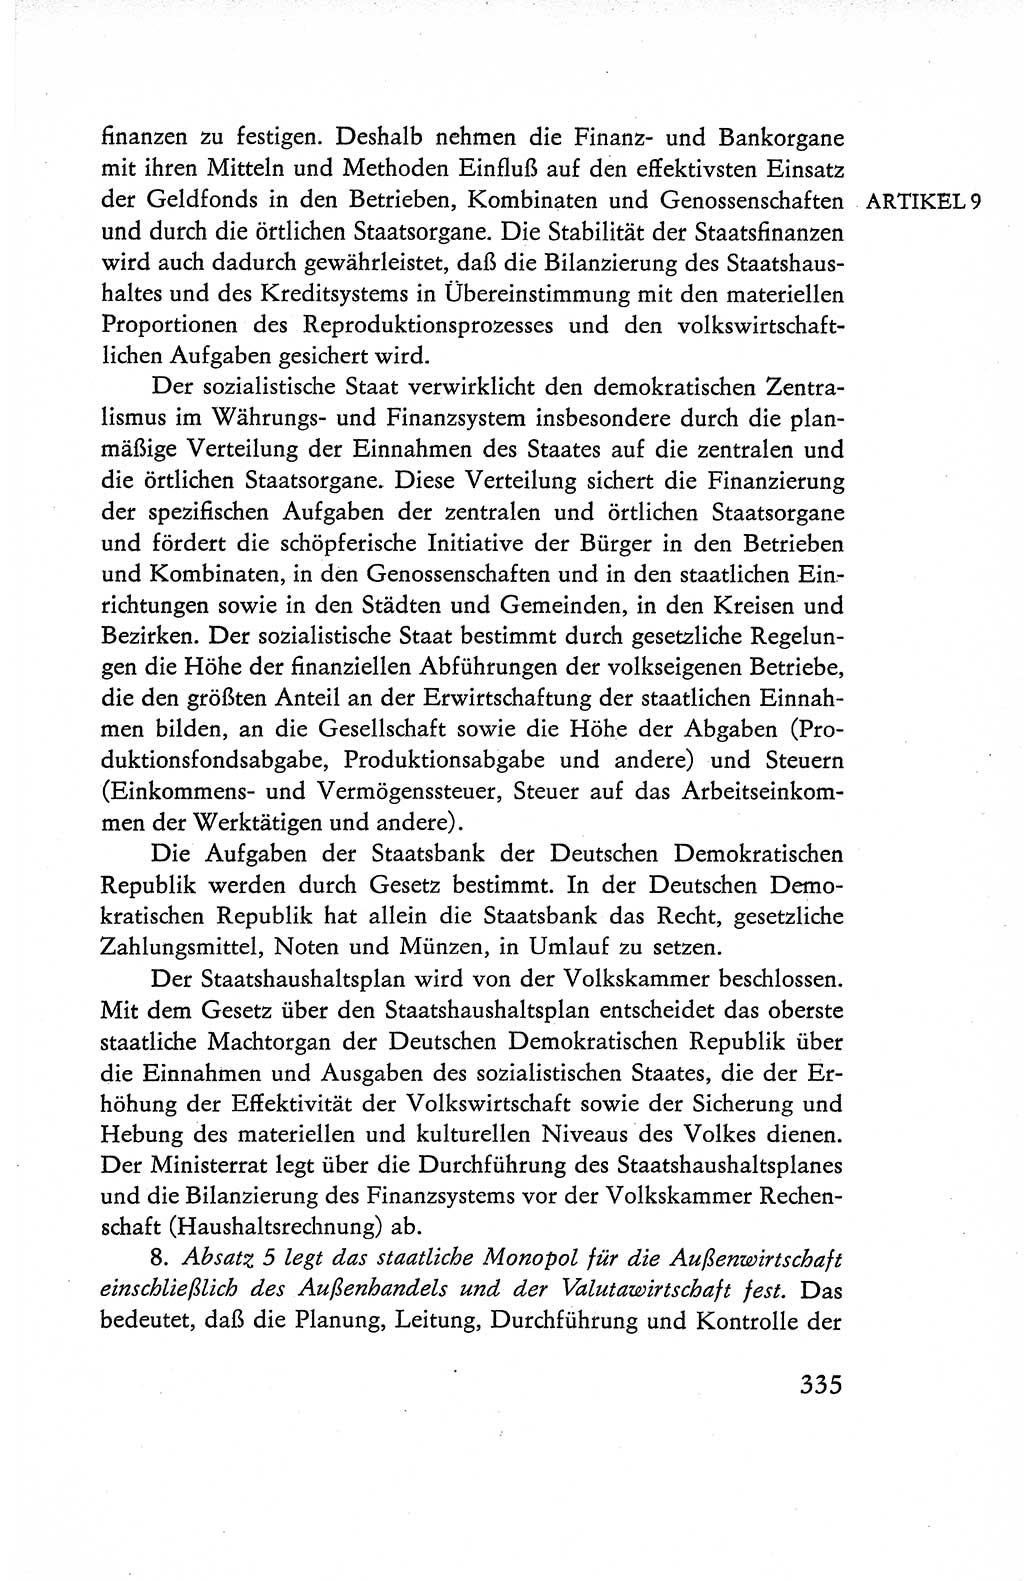 Verfassung der Deutschen Demokratischen Republik (DDR), Dokumente, Kommentar 1969, Band 1, Seite 335 (Verf. DDR Dok. Komm. 1969, Bd. 1, S. 335)